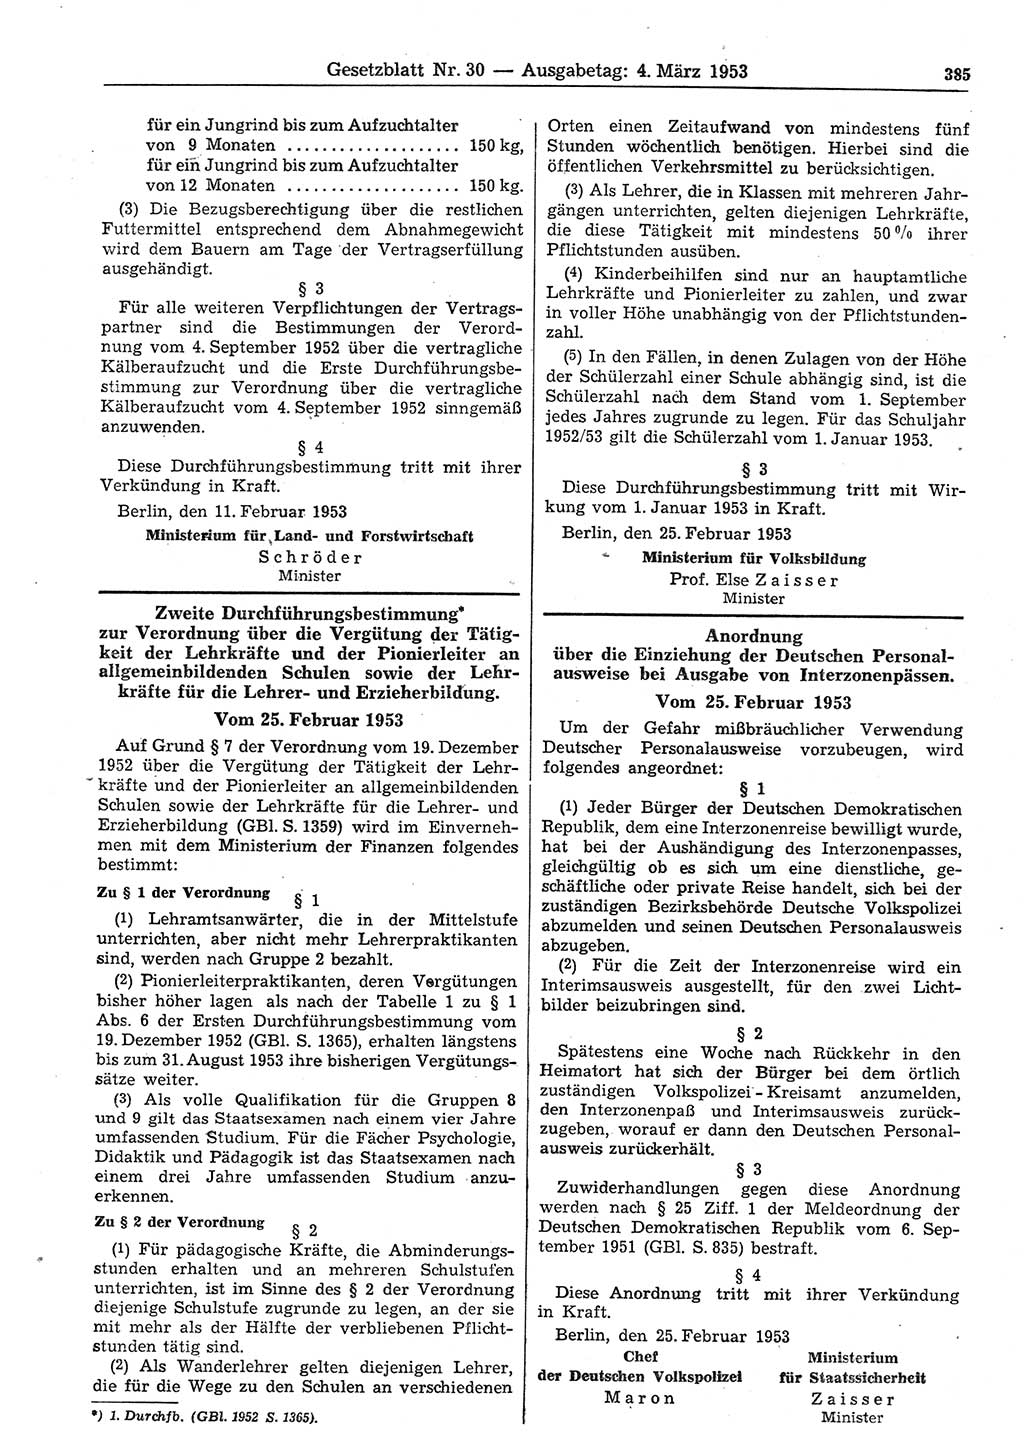 Gesetzblatt (GBl.) der Deutschen Demokratischen Republik (DDR) 1953, Seite 385 (GBl. DDR 1953, S. 385)